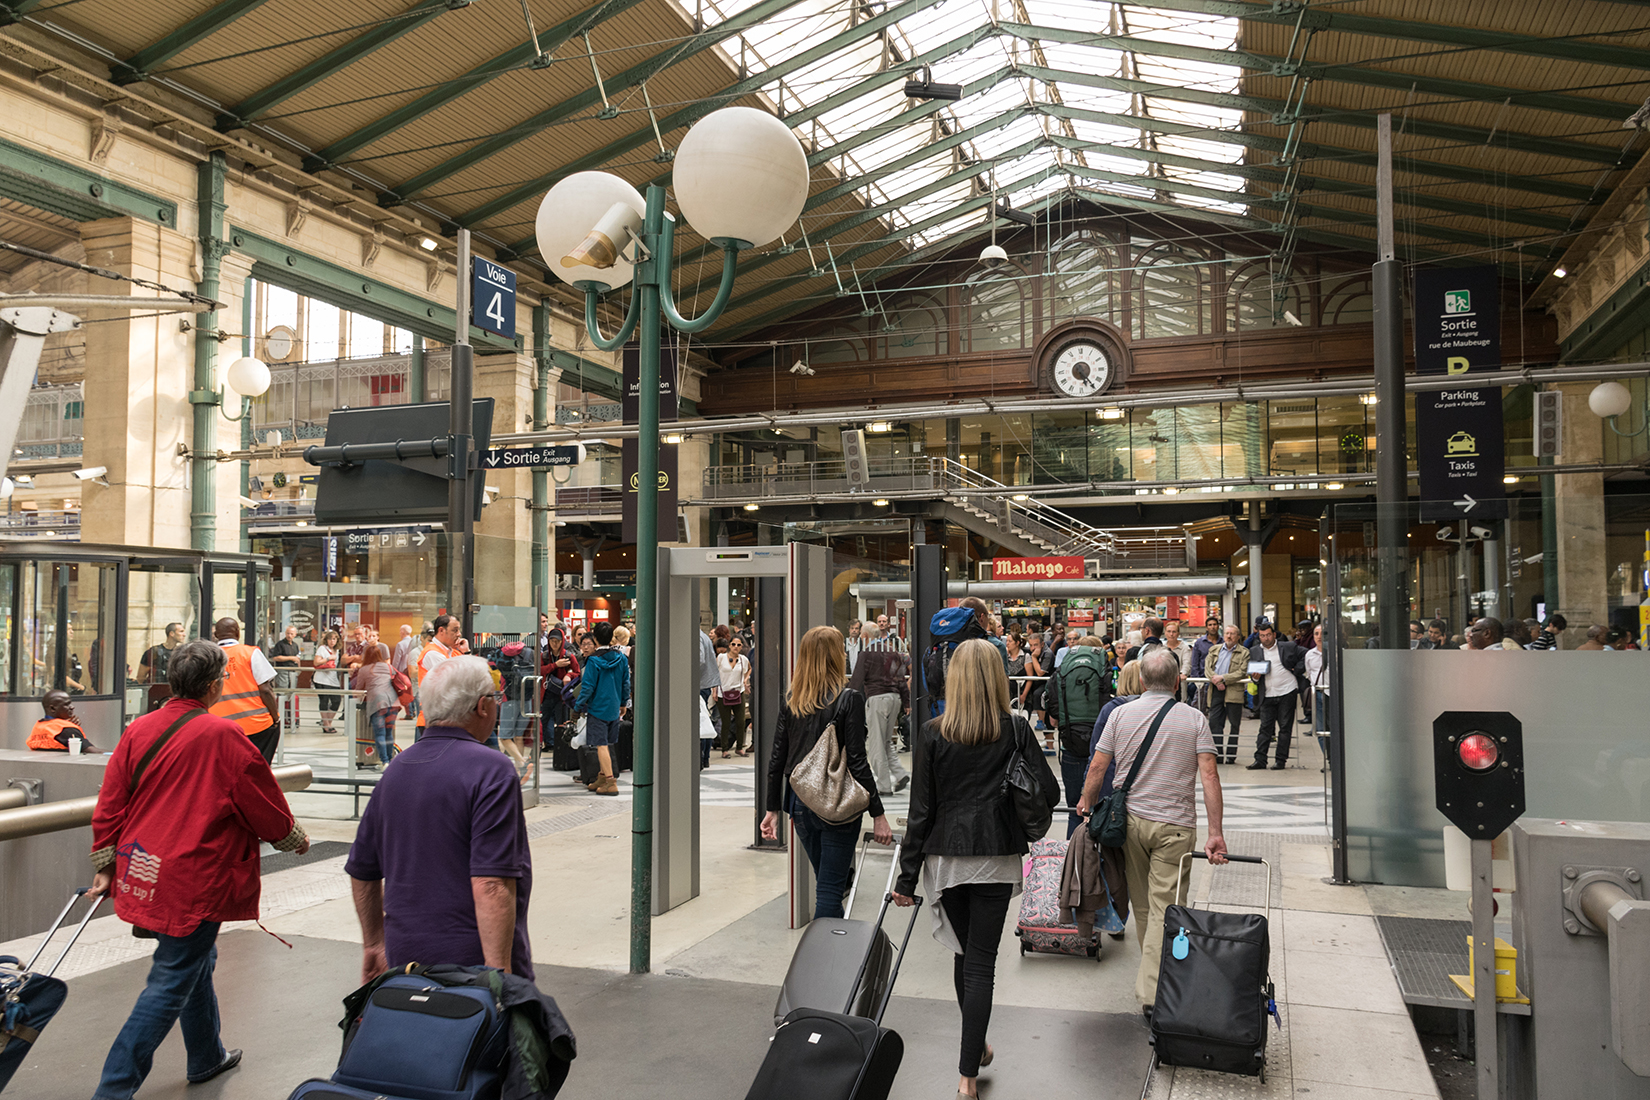 Arriving in Paris at platform 4 of Gare du Nord station